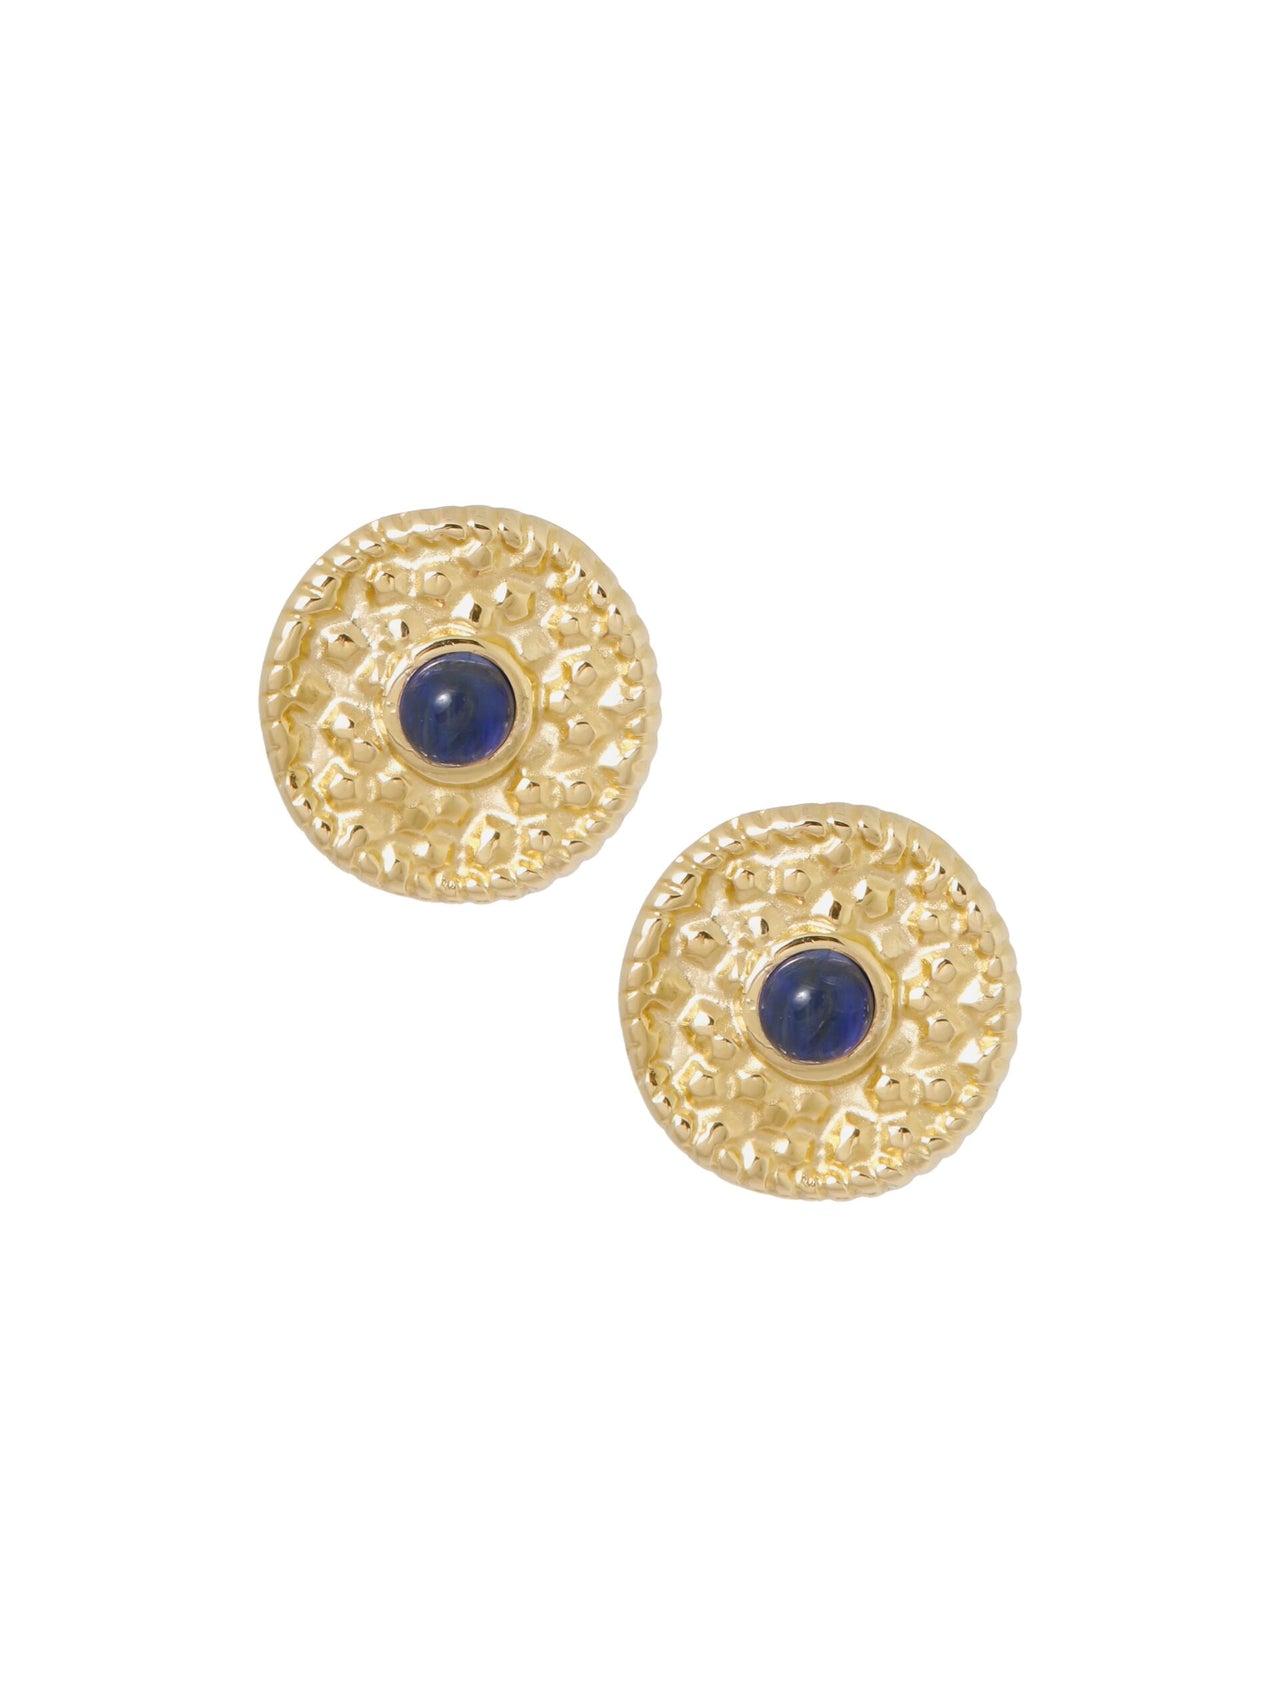 Vergulde oorstekers met lapis lazuli goud - LEEF mode en accessoires